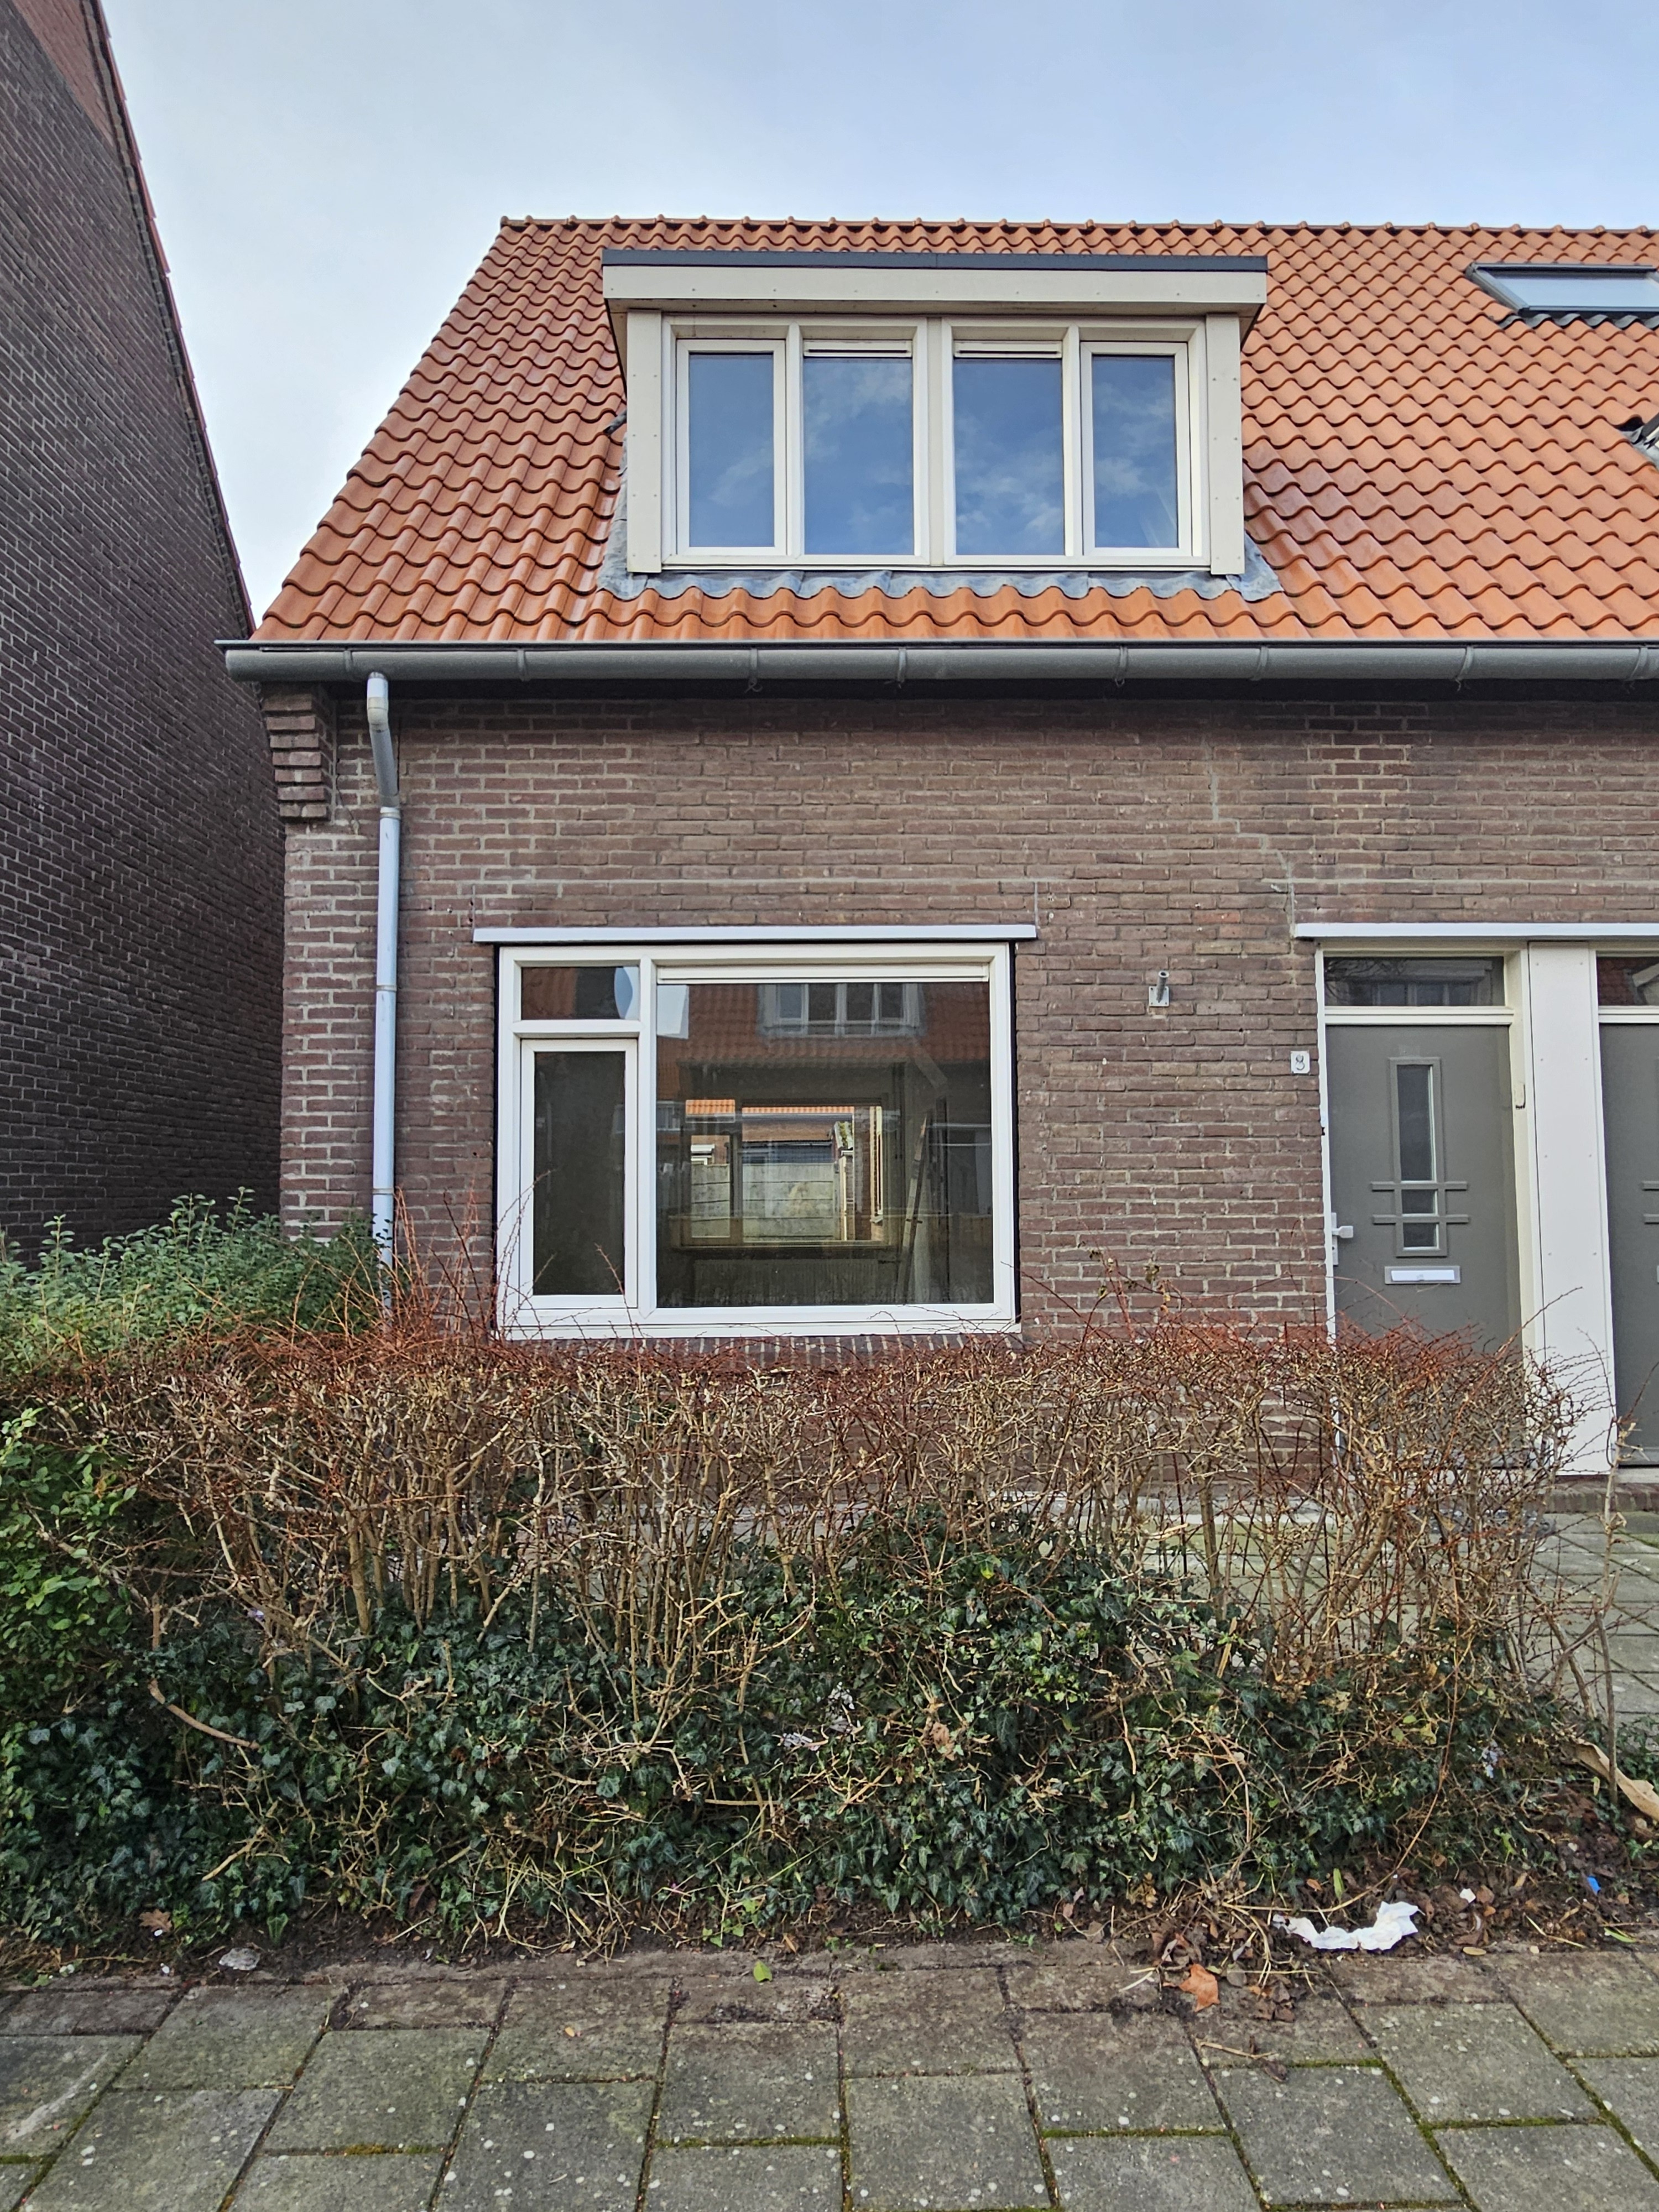 Eemstraat 8, 7417 XW Deventer, Nederland